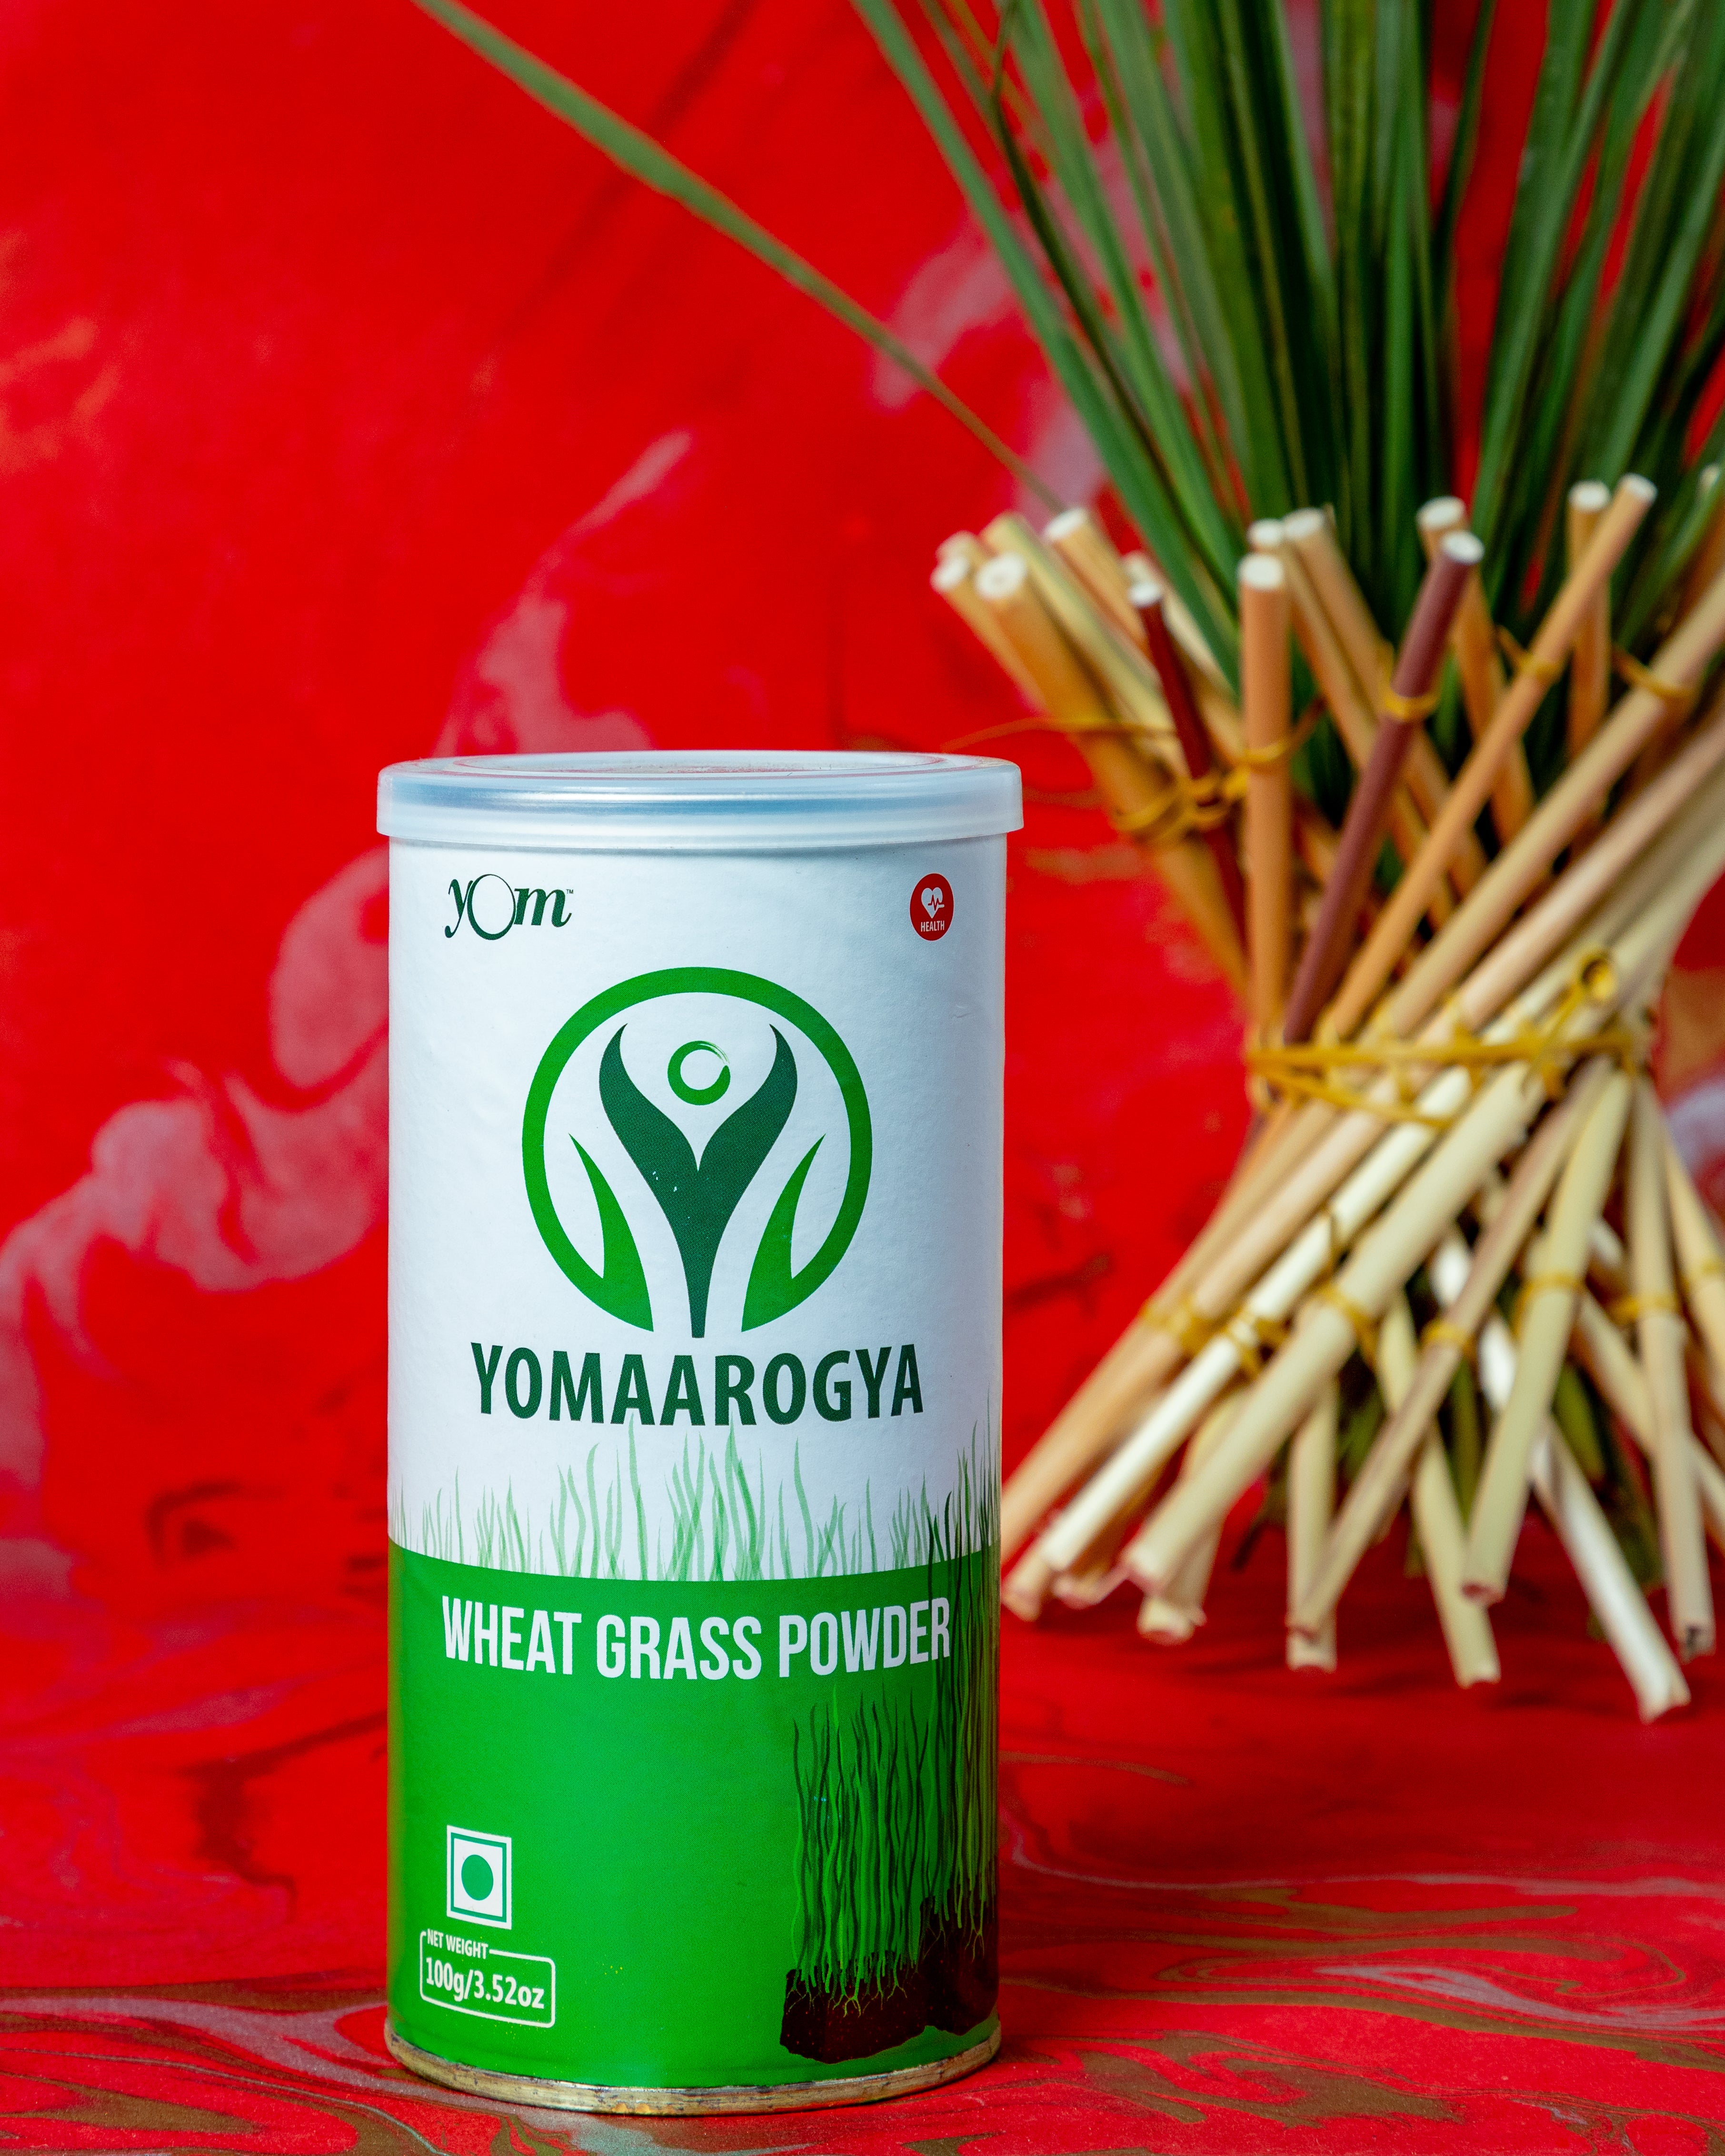 YOM YOMAAROGYA Wheat Grass Powder (Tin) - 100 Gms